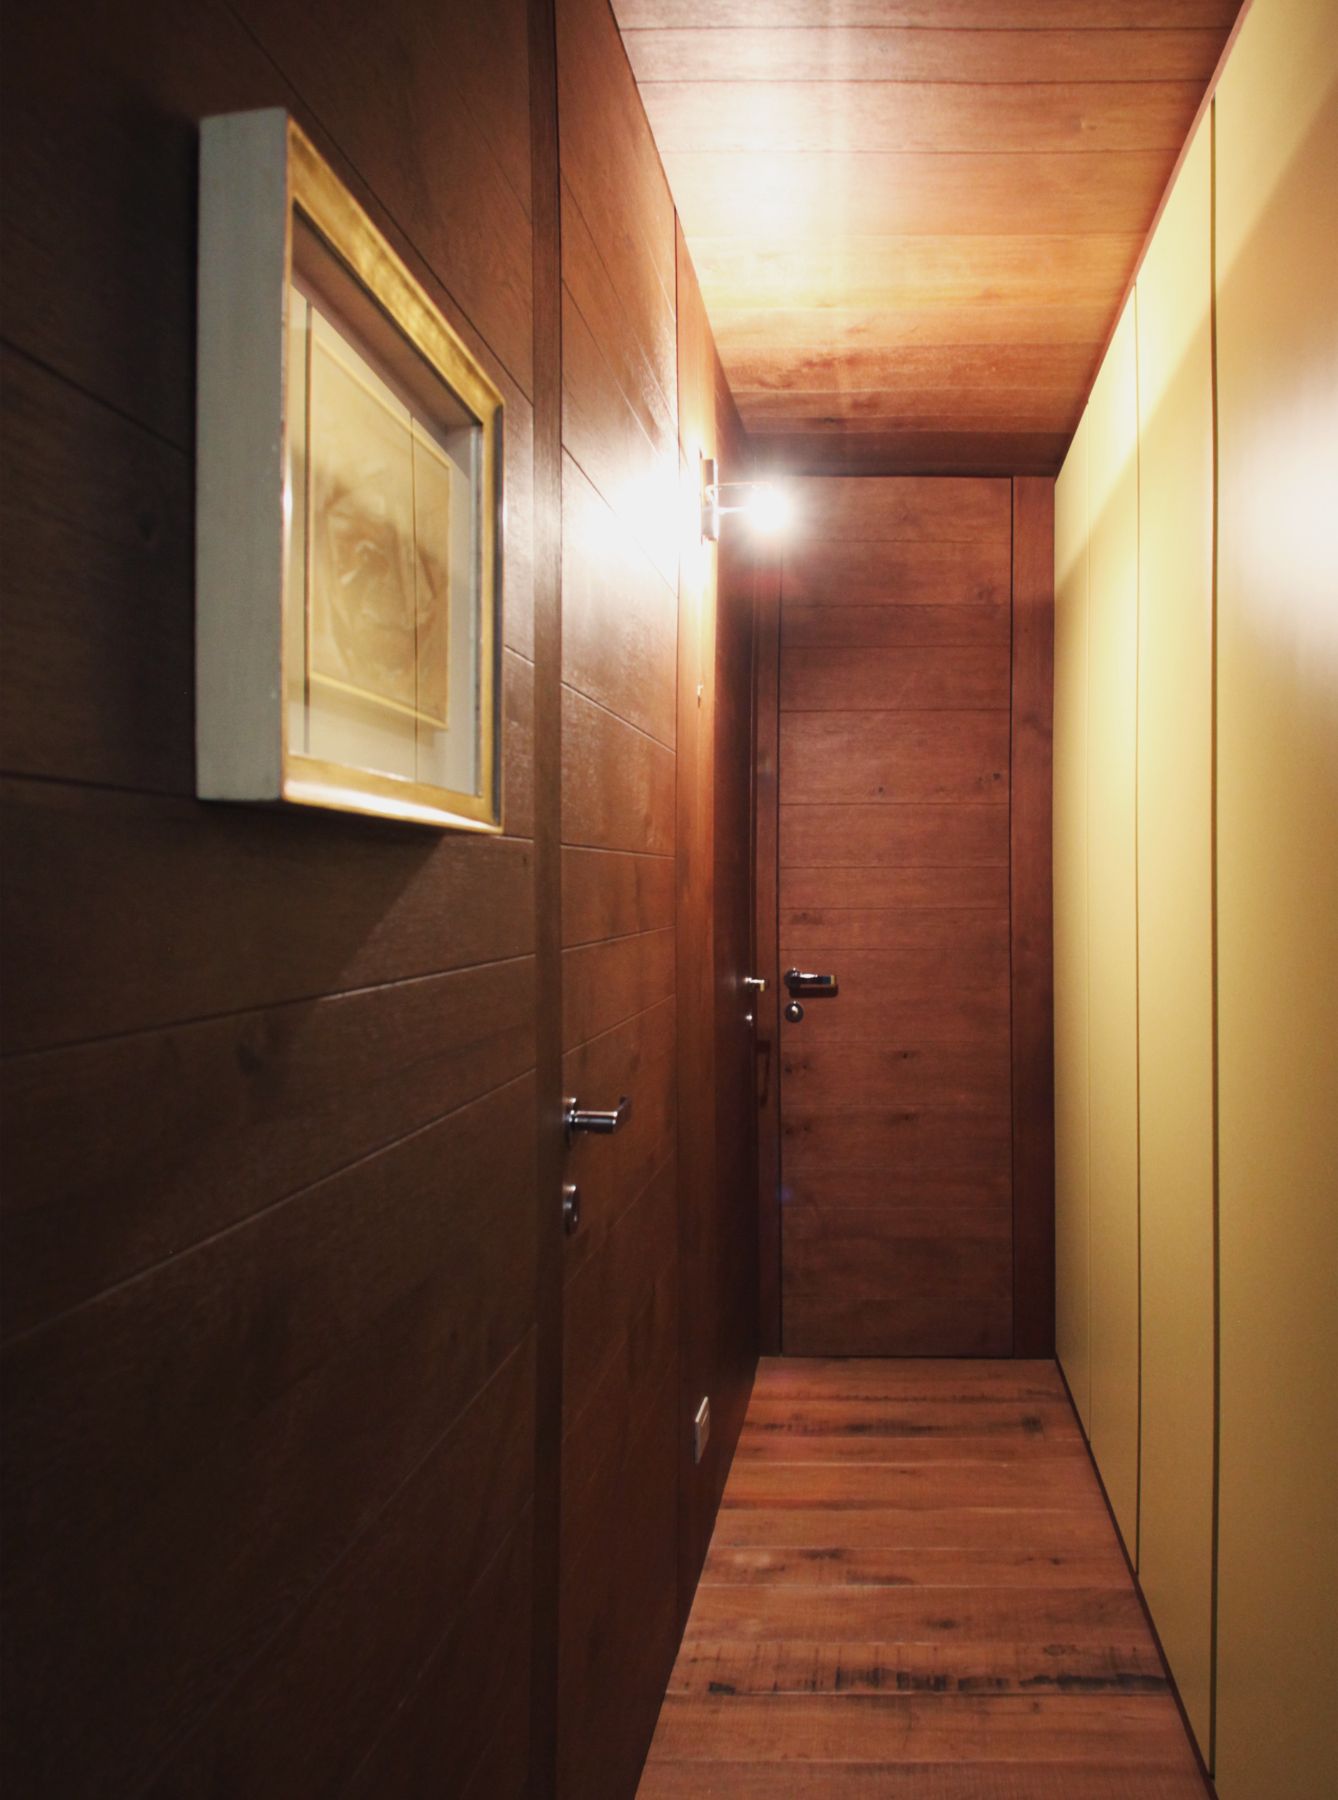 Appartamento in Valtellina, Ristrutturazione e progetto di interni, 70mq

Cliente privato, 2013